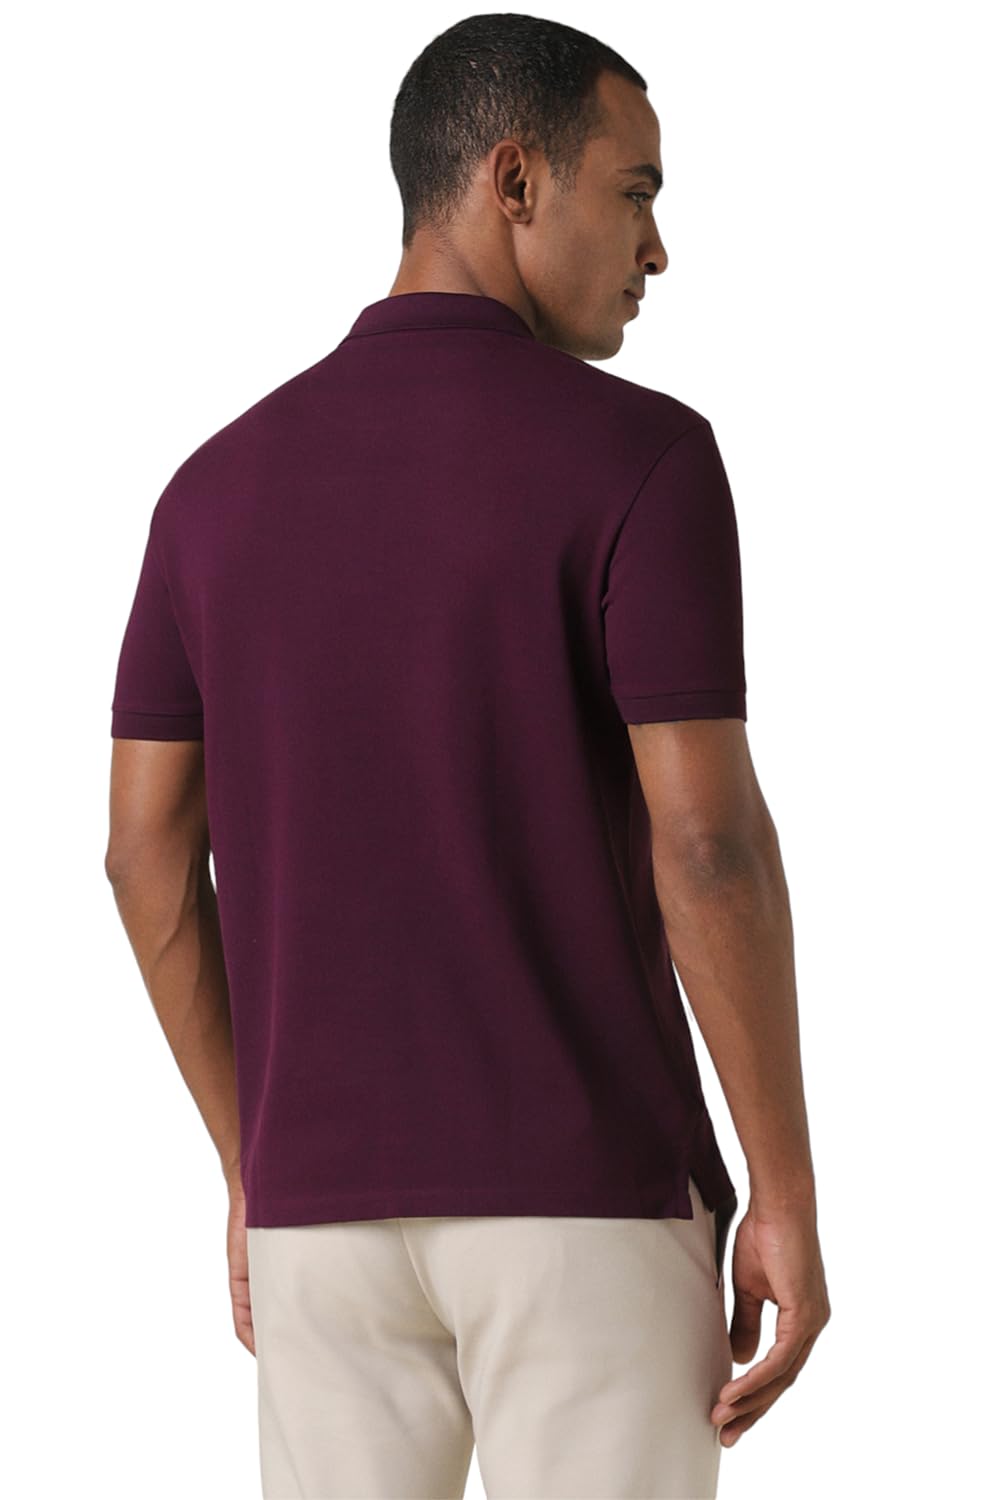 Allen Solly Men's Regular Fit T-Shirt (ASKPGRGFM01348_Purple_L